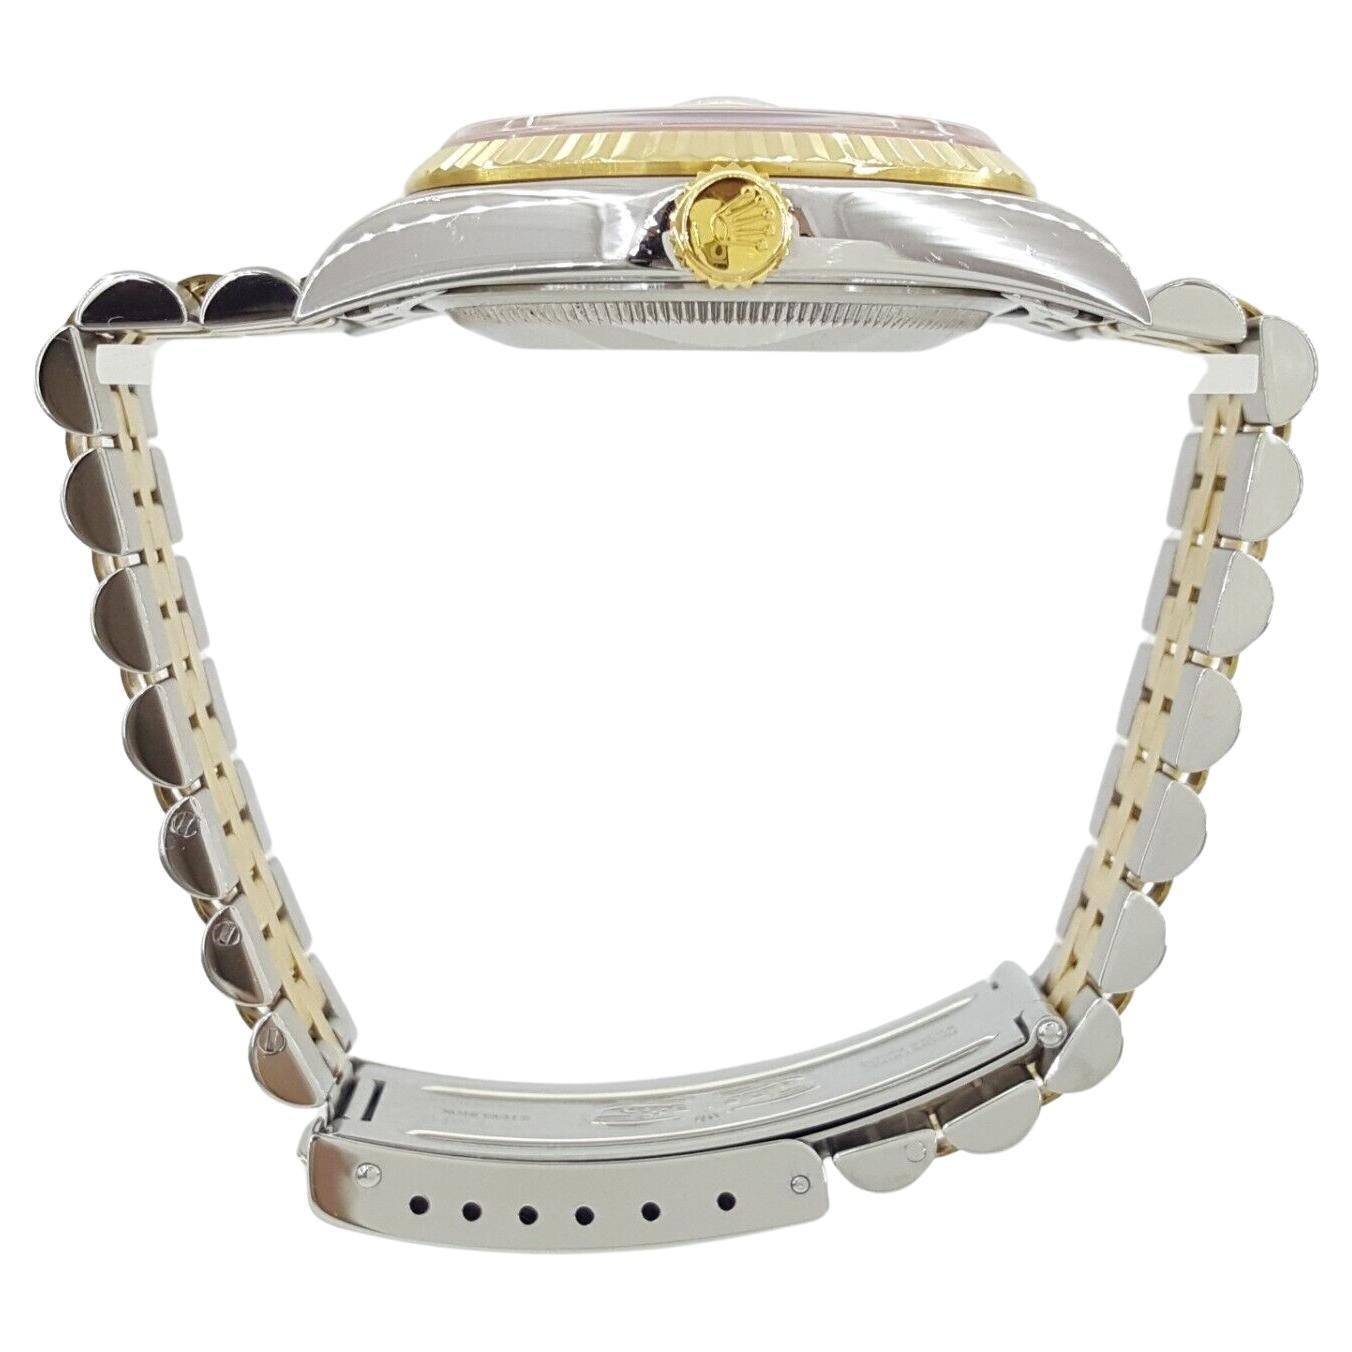 Il s'agit d'une authentique Rolex DateJust 16233 en acier inoxydable et or jaune 18 carats, d'un diamètre de 36 mm avec un cadran en diamants, fabriquée en 2001.

Elle est dotée d'une couronne vissée, d'une lunette cannelée en or jaune 18 carats et